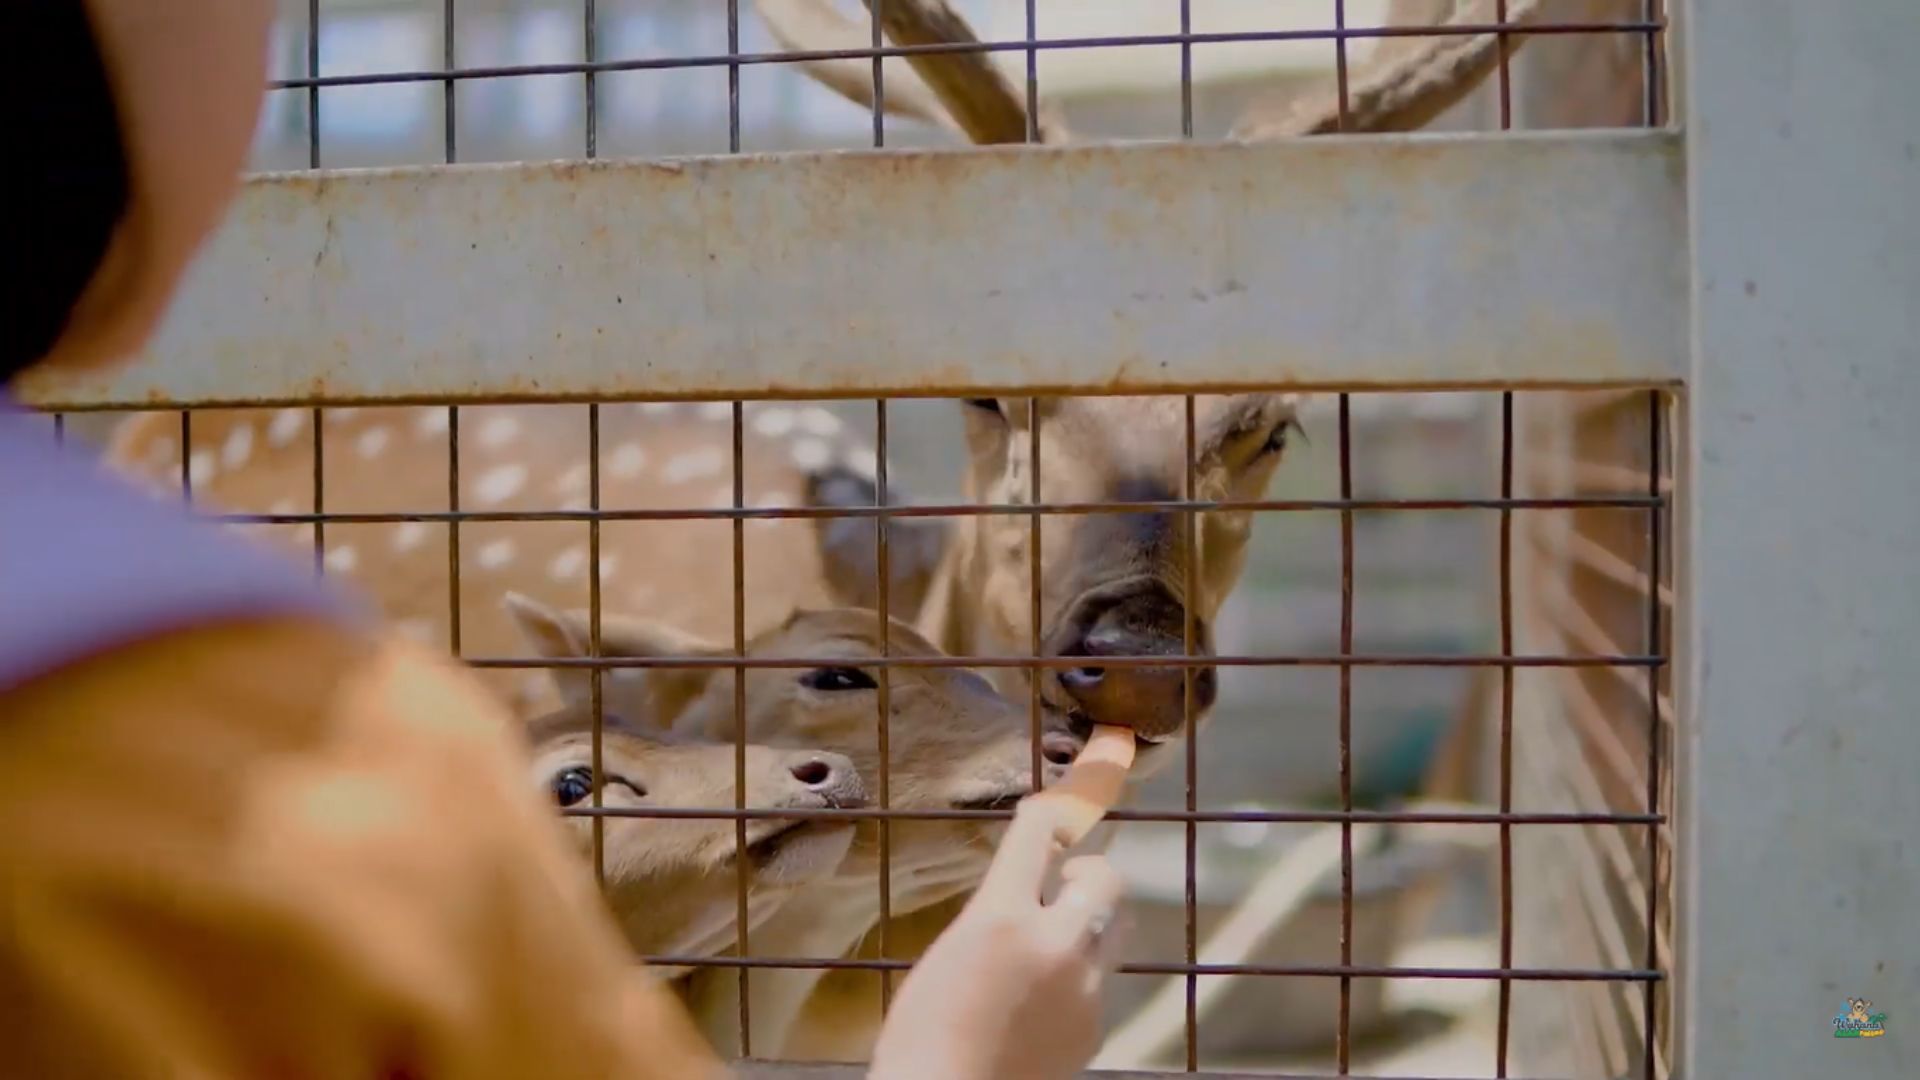 Mini Zoo yang terdapat di Wahana Alam Parung Tasikmalaya membuat Anak dapat melihat binatang dari jarak dekat.